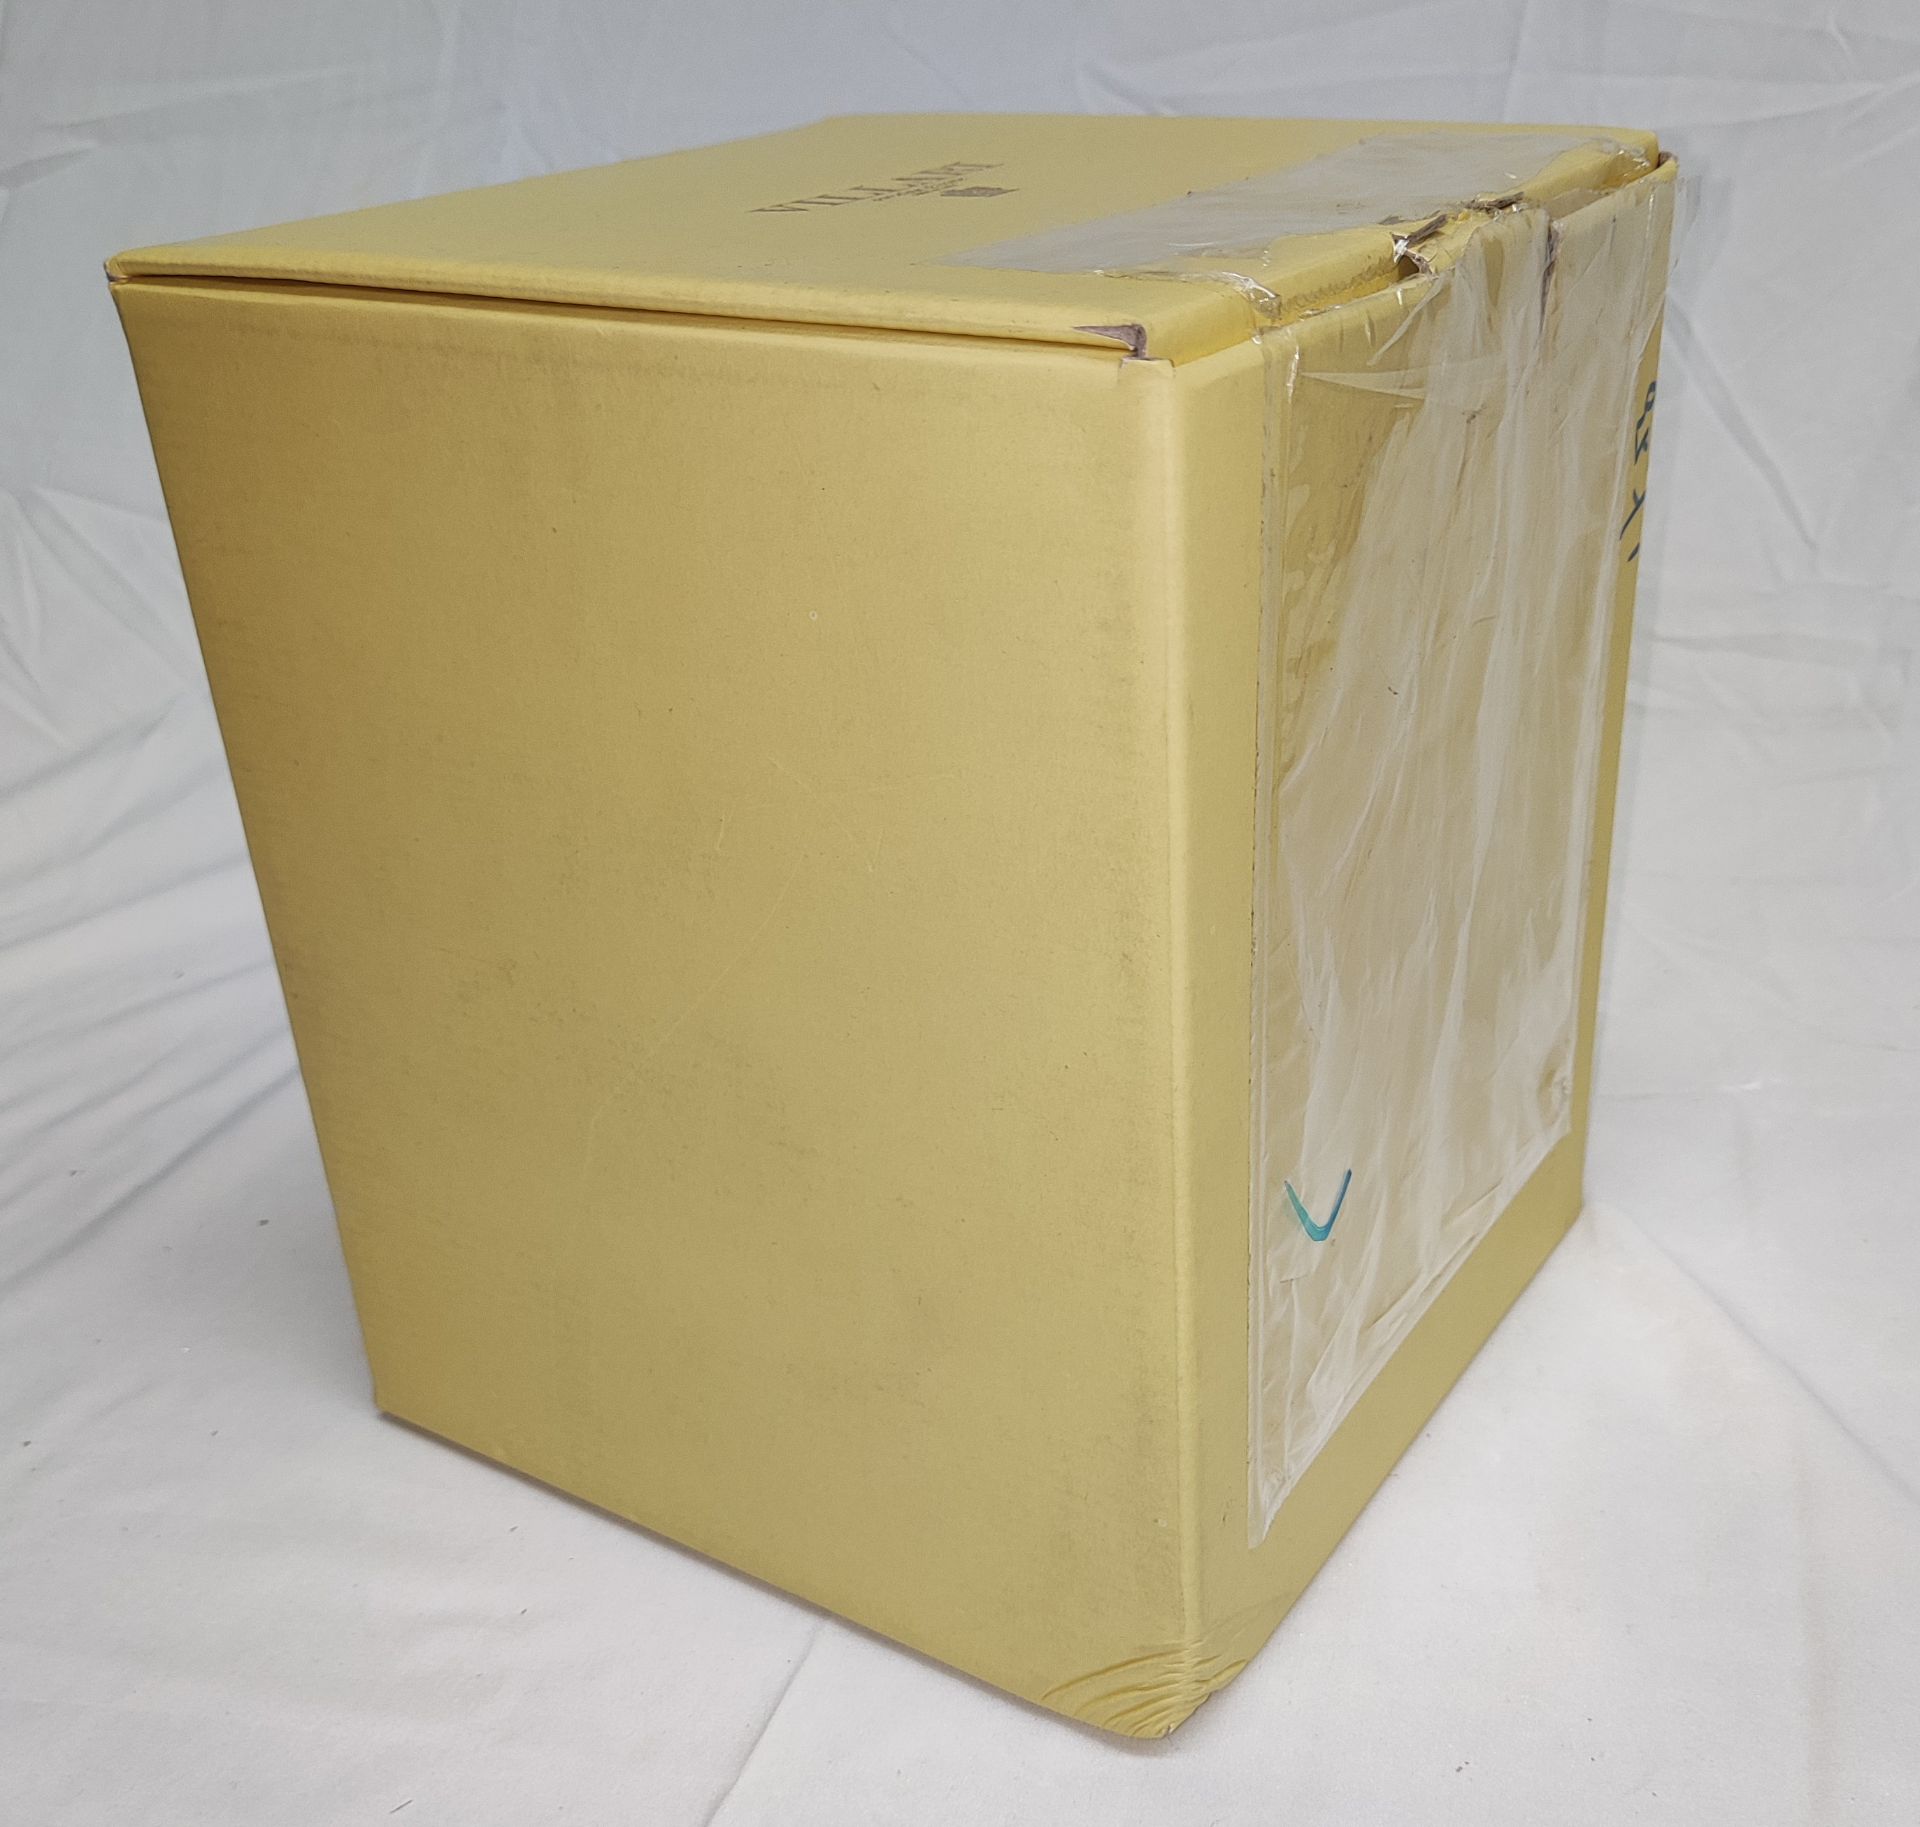 1 x VILLARI Hiroito Square Tissue Box - Chrome Plated - Boxed - Original RRP £529 - Ref: 6125321/ - Image 15 of 17